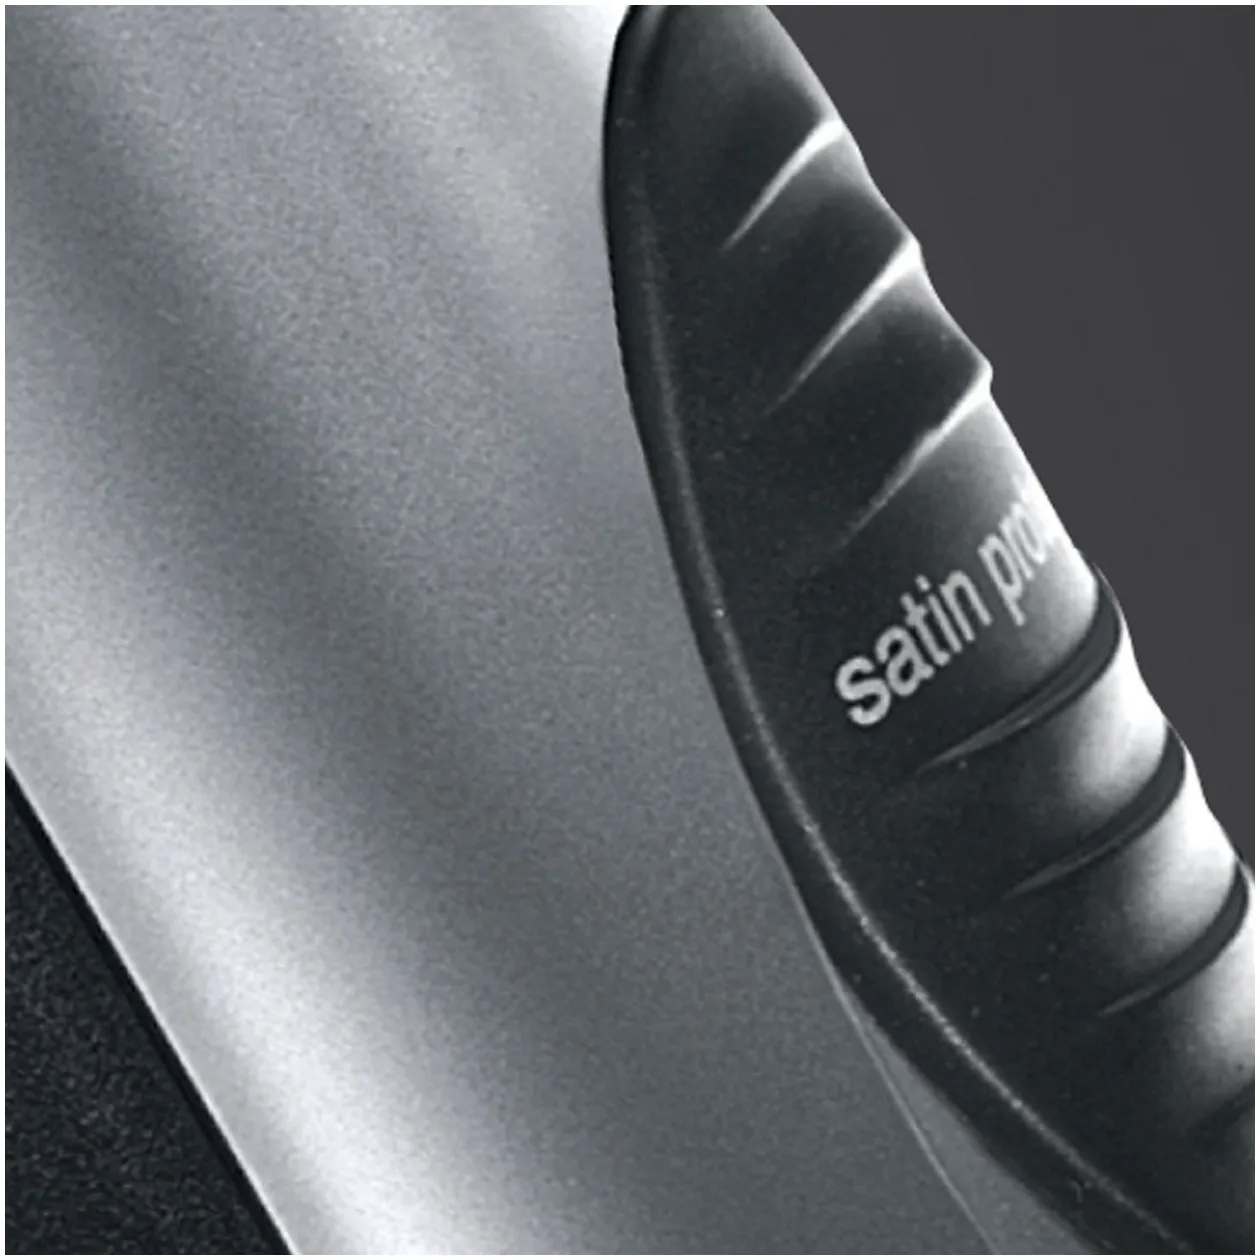 Braun HD710 Satin-Hair 7 Zwart